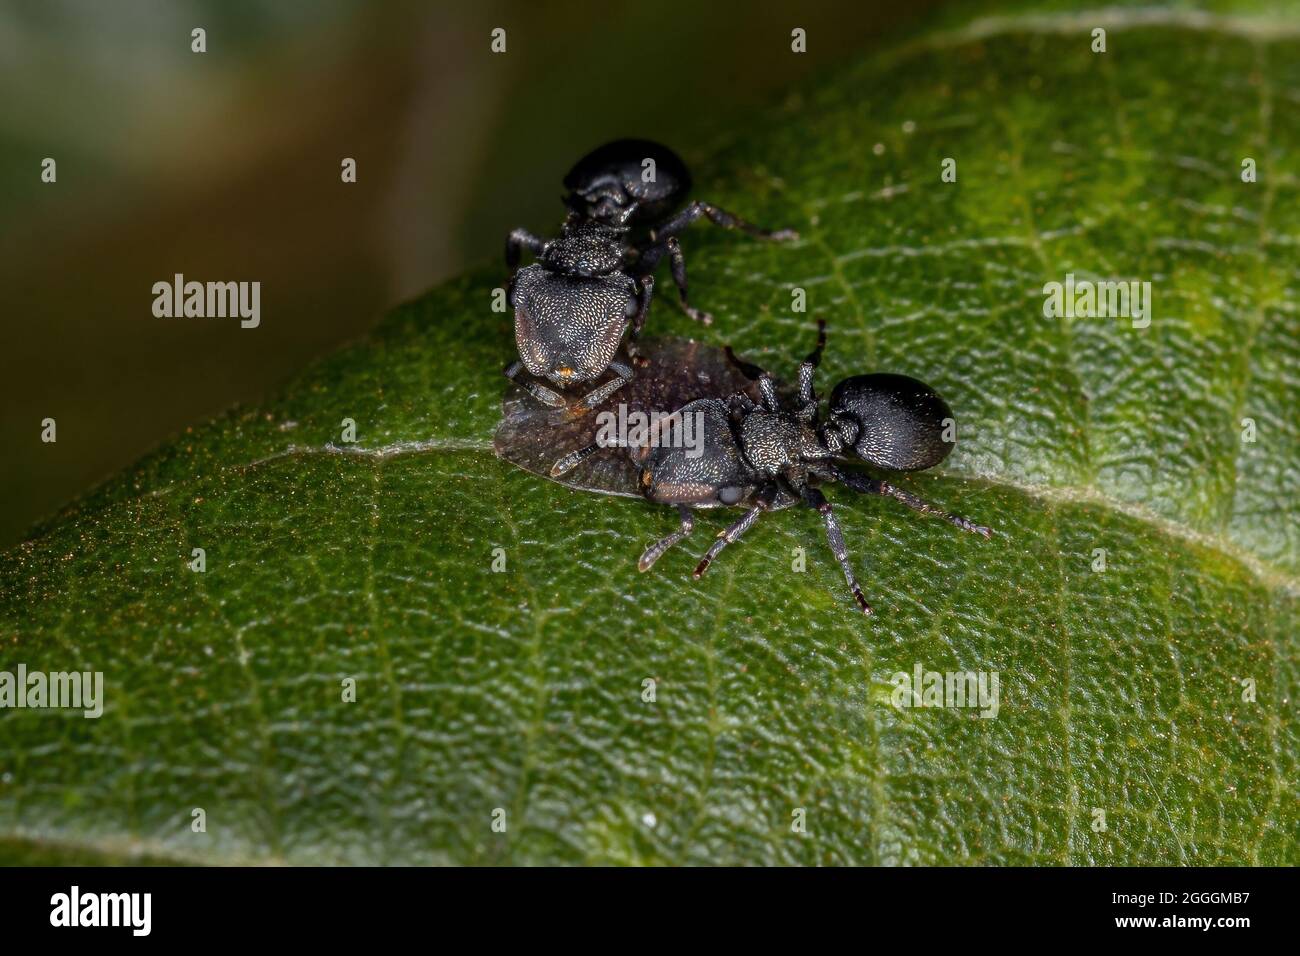 Symbolische Interaktion zwischen Schildkrötenansen der Gattung Ccepalotes und Skaleninsekten der Superfamilie Coccoidea in einer Pflanze Stockfoto